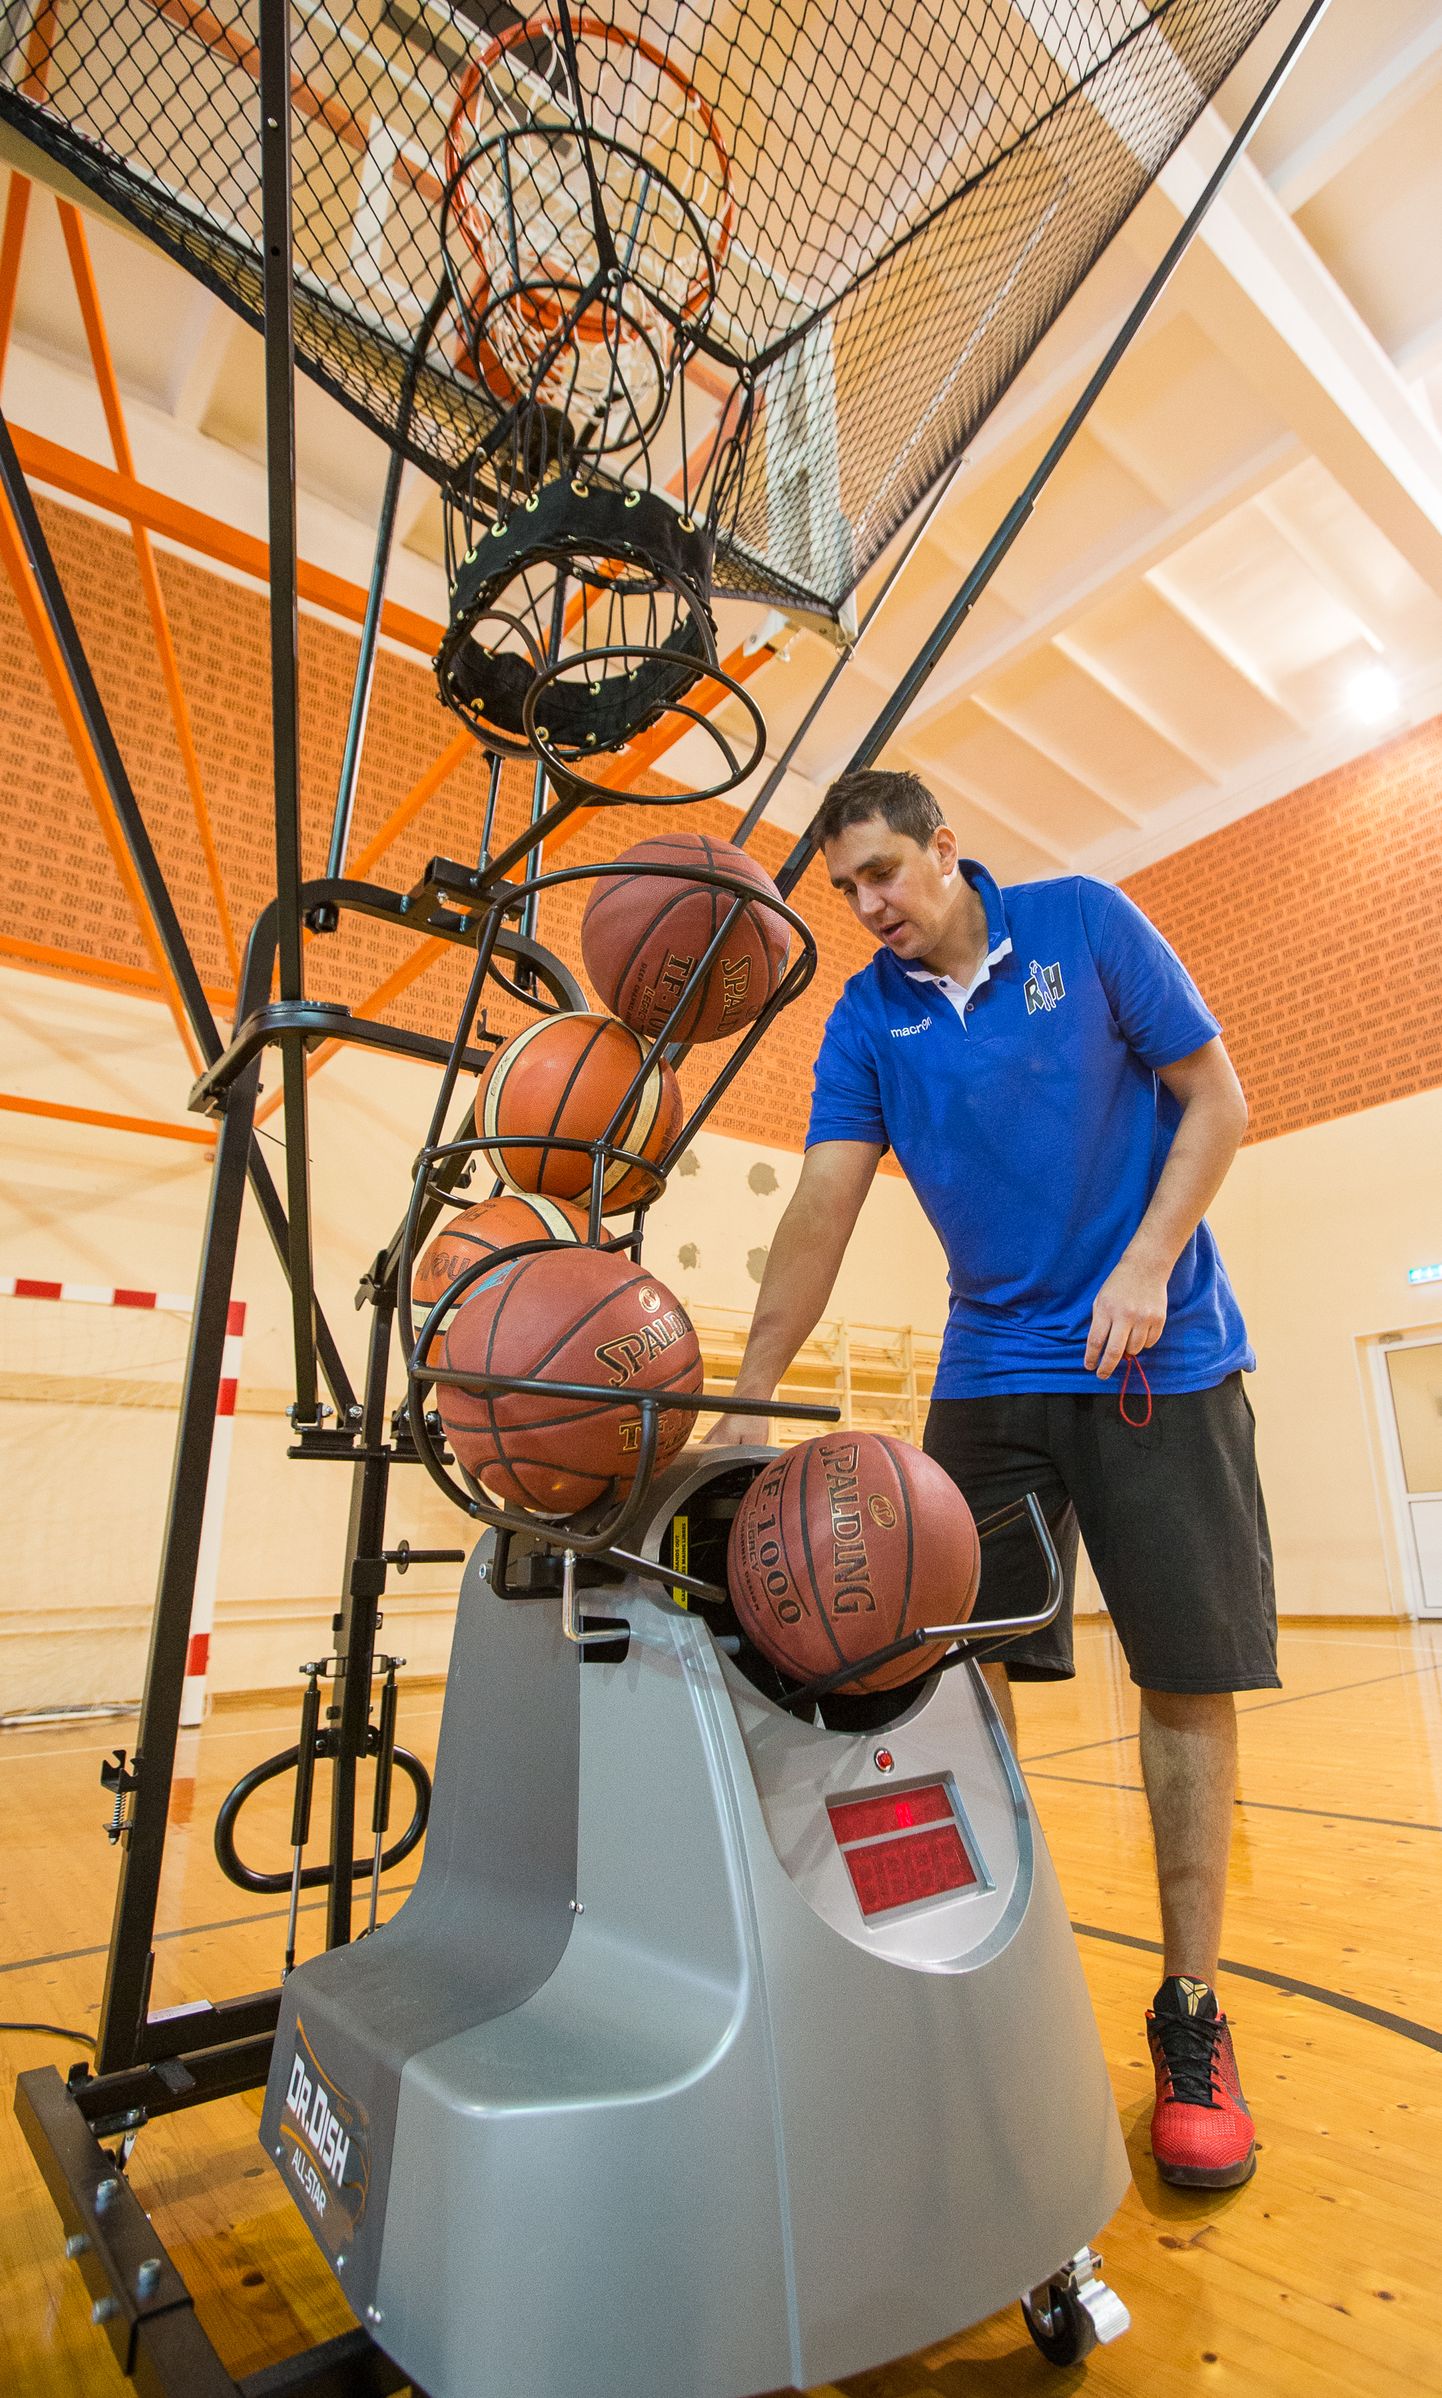 Четыре года действовавшая в Ийзаку баскетбольная академия Рейнара Халлика укладывает мячи. Баскетбольная школа, в которой занимаются ребята из основной школы, пока что работу продолжит.